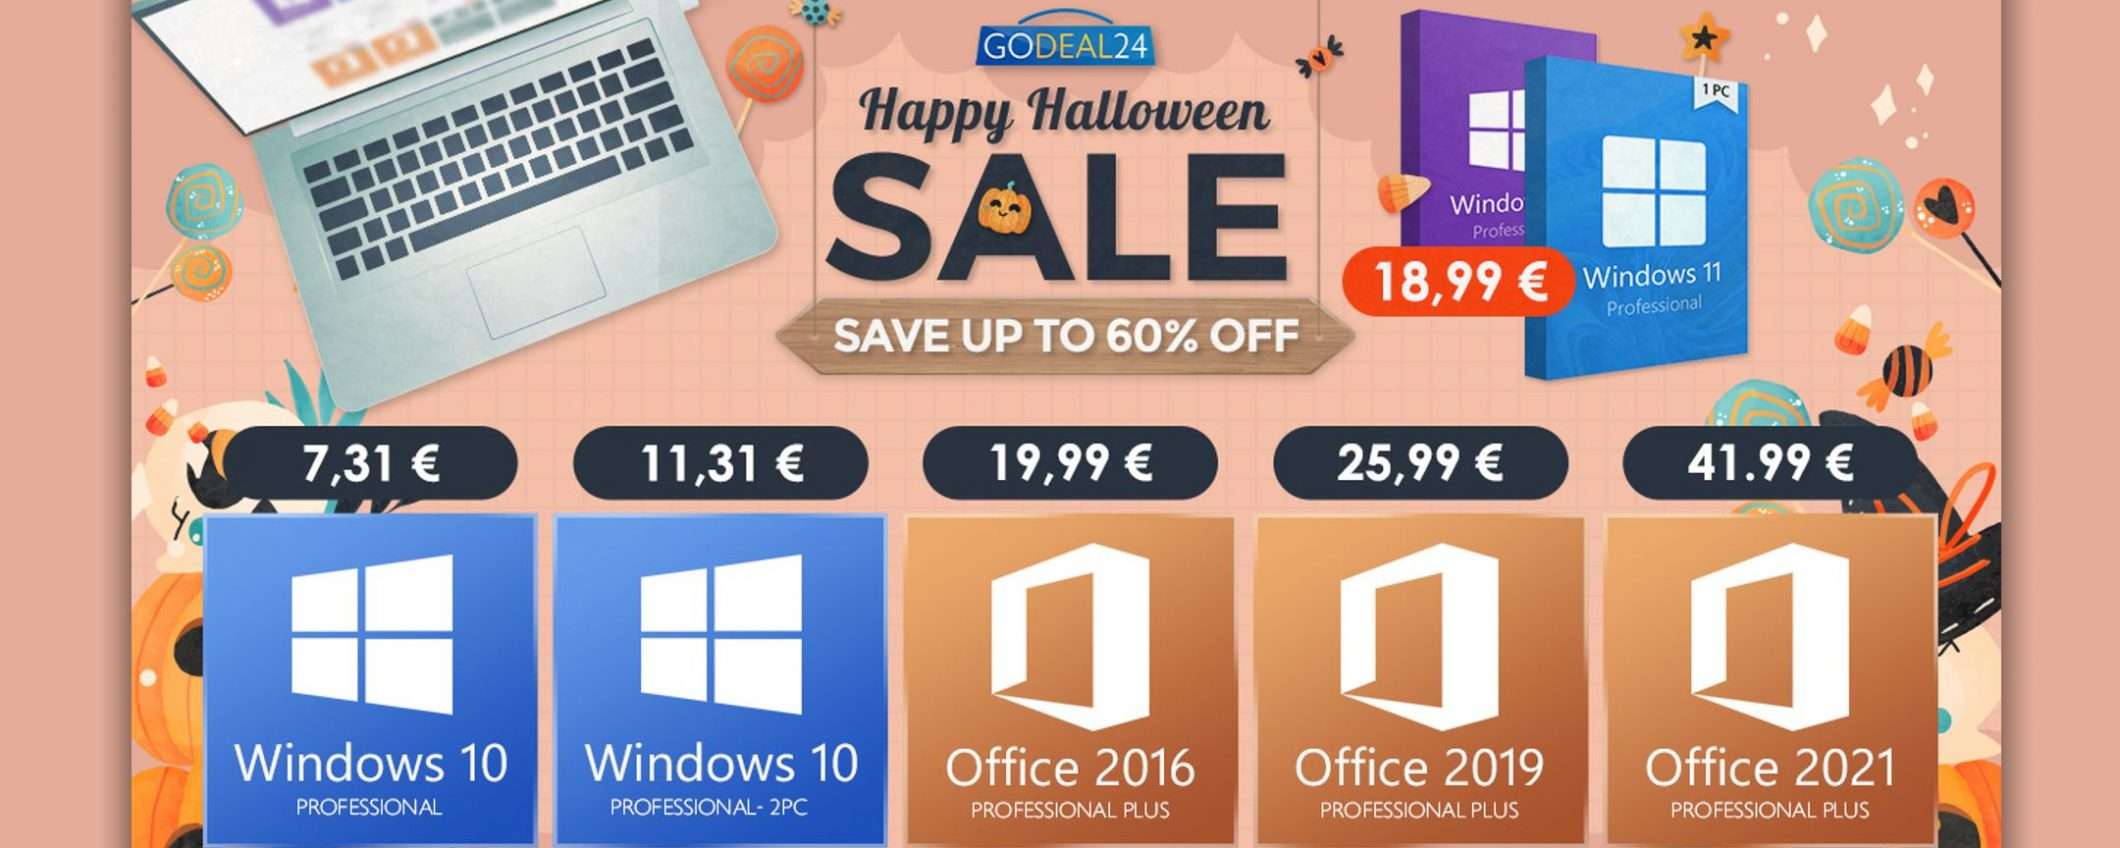 Halloween GoDeal24: saldi per l'aggiornamento a Windows 11